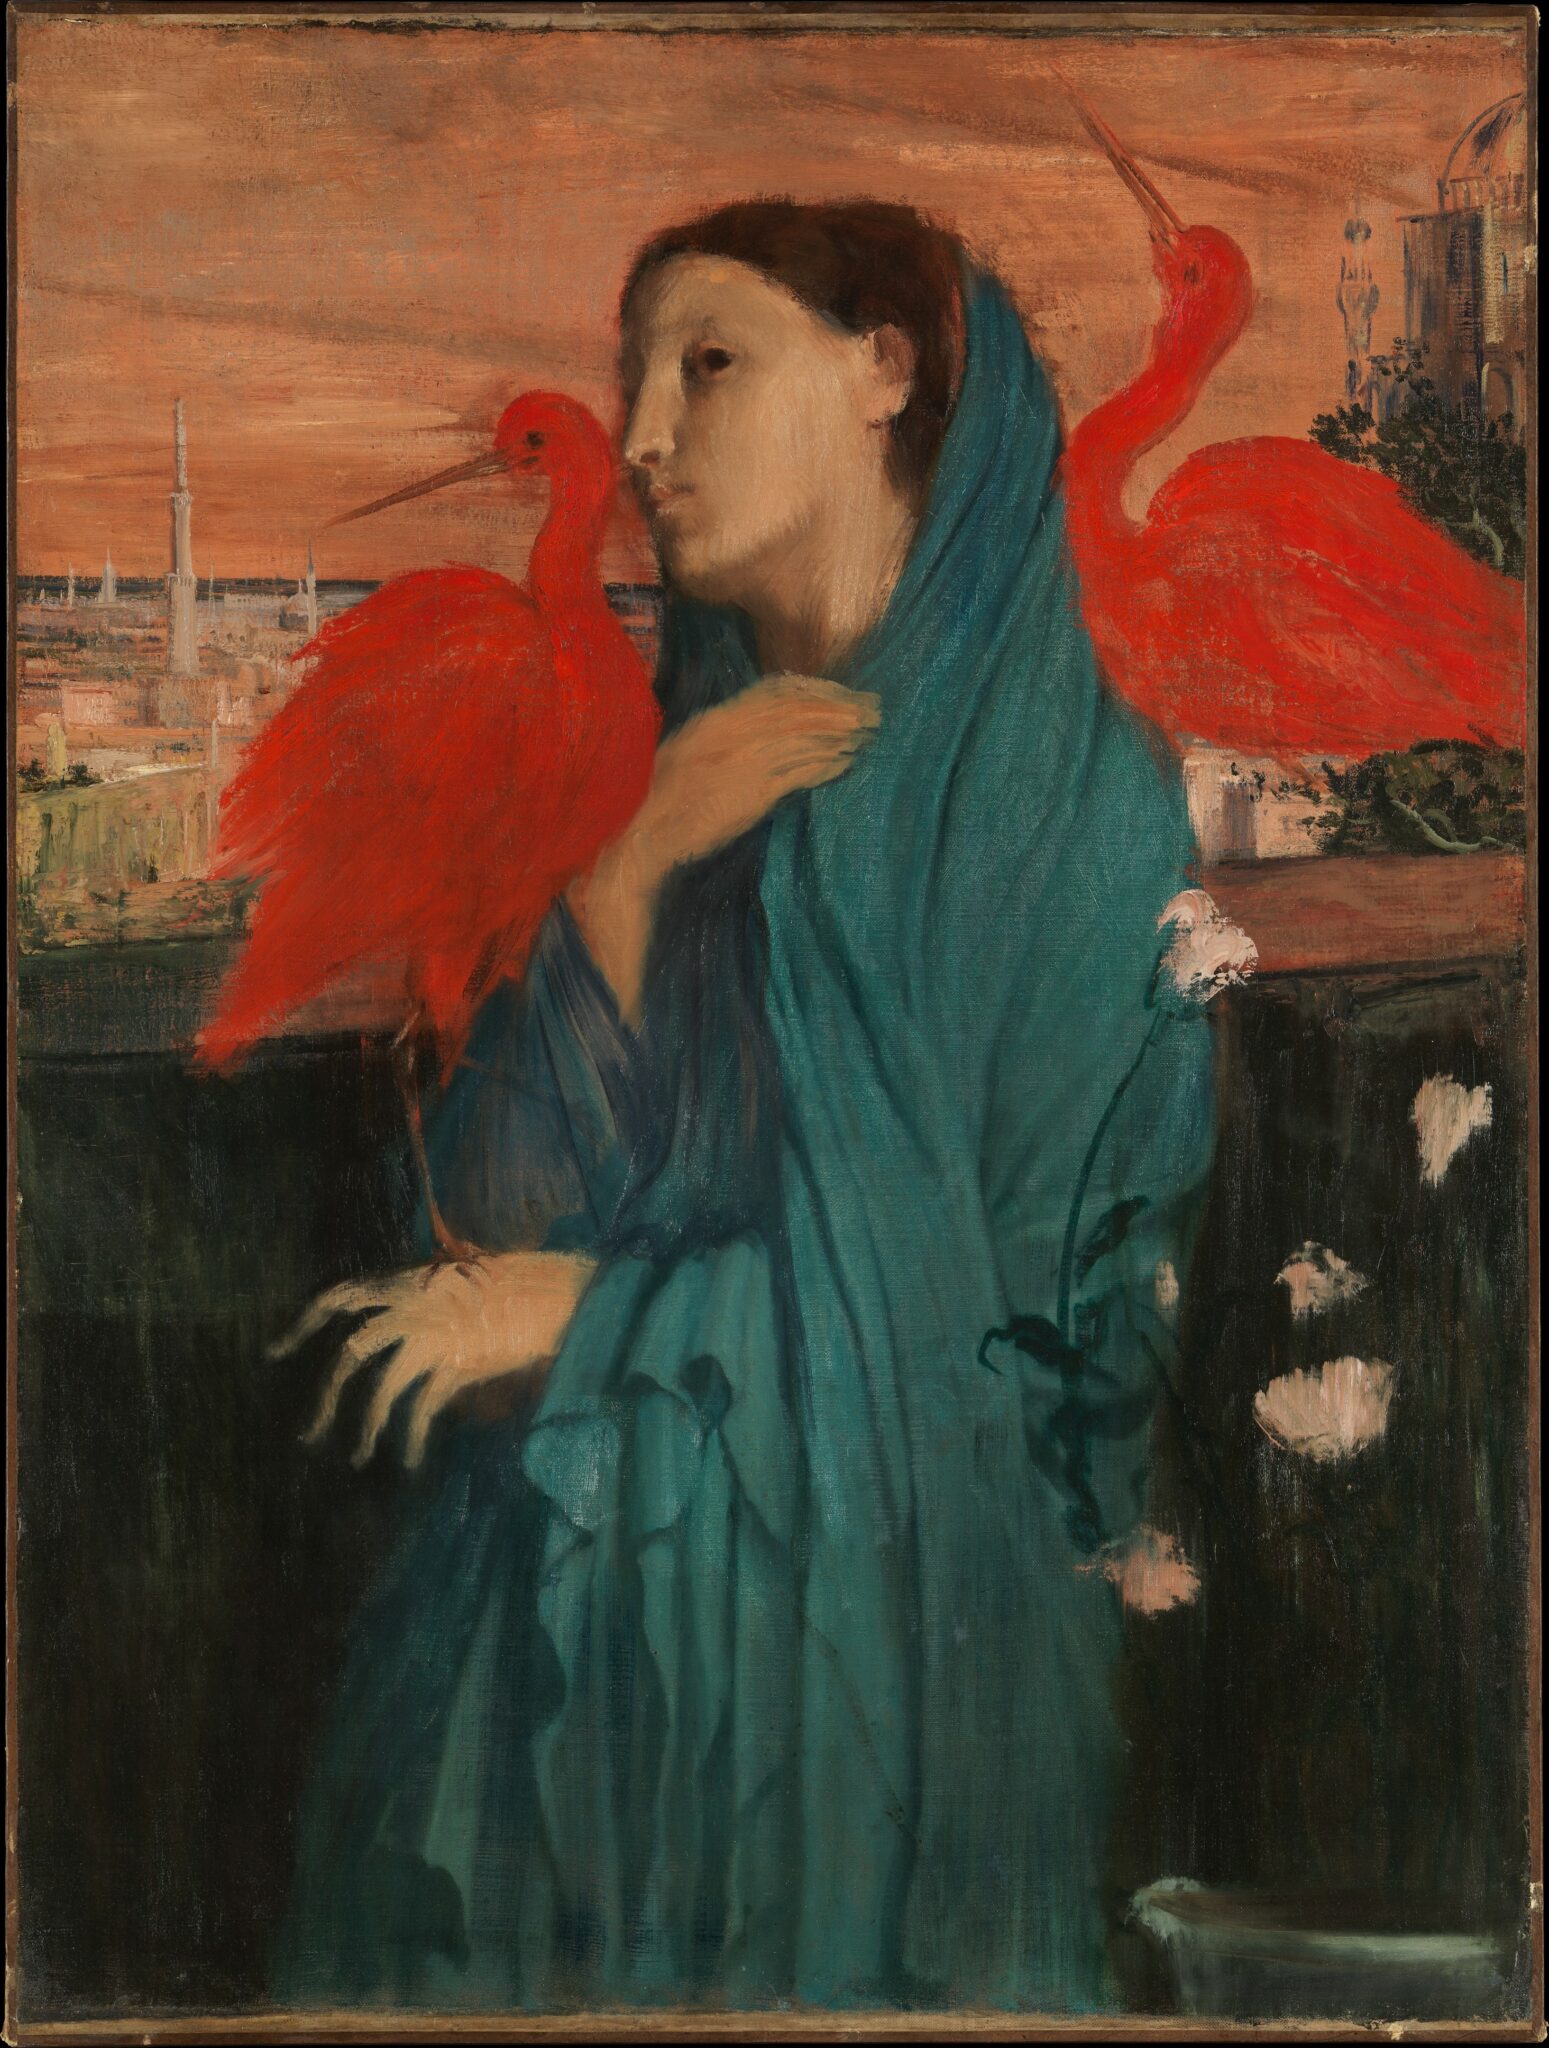 L'exposition "Manet/Degas" au Musée d'Orsay avec le chanteur Albin de la Simone 6